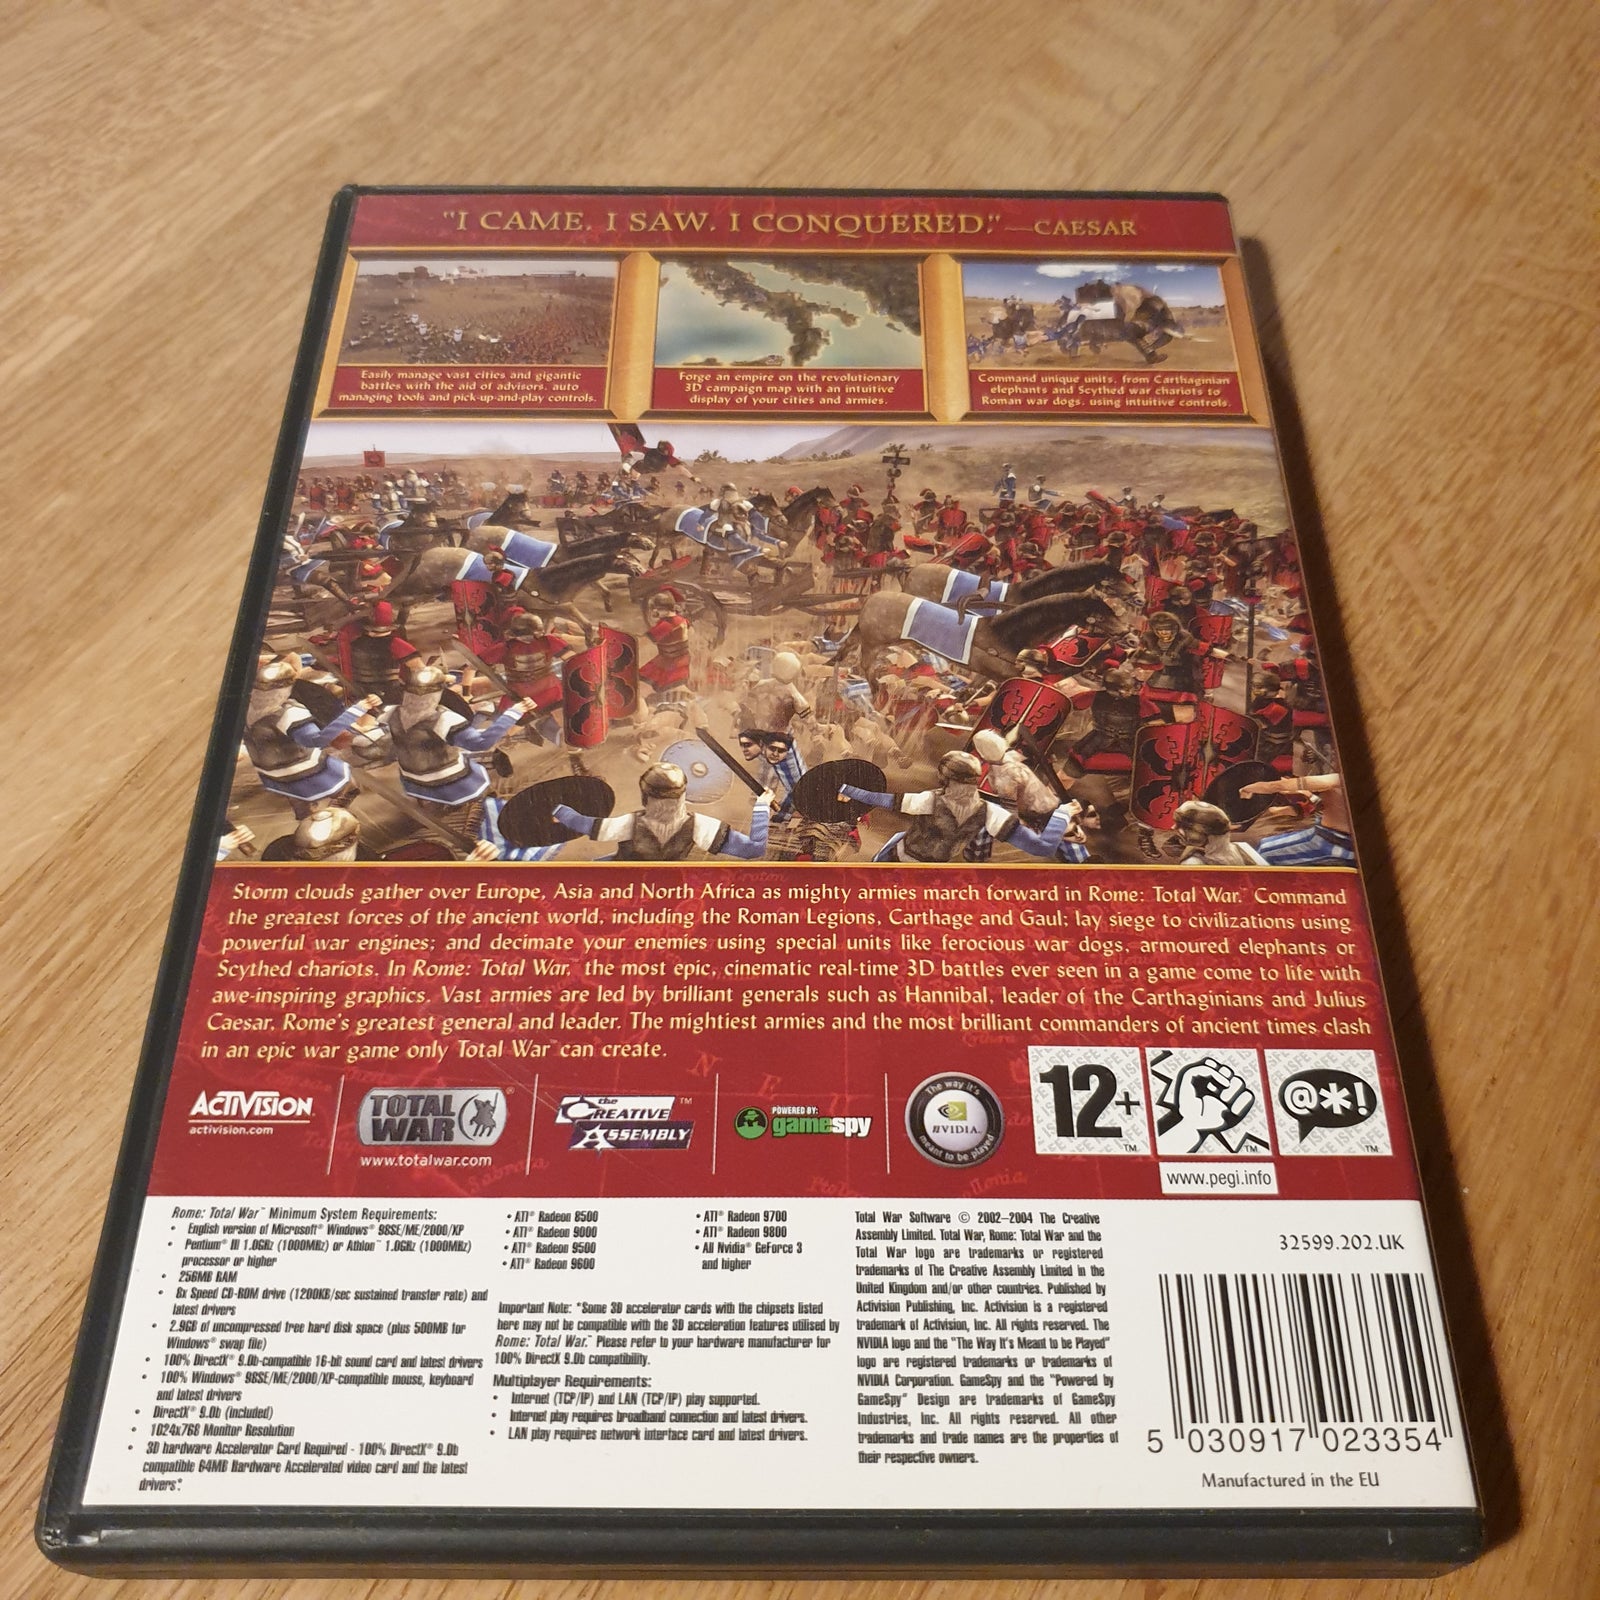 ROME - TOTAL WAR (Box-set med 3 discs), til pc, strategi